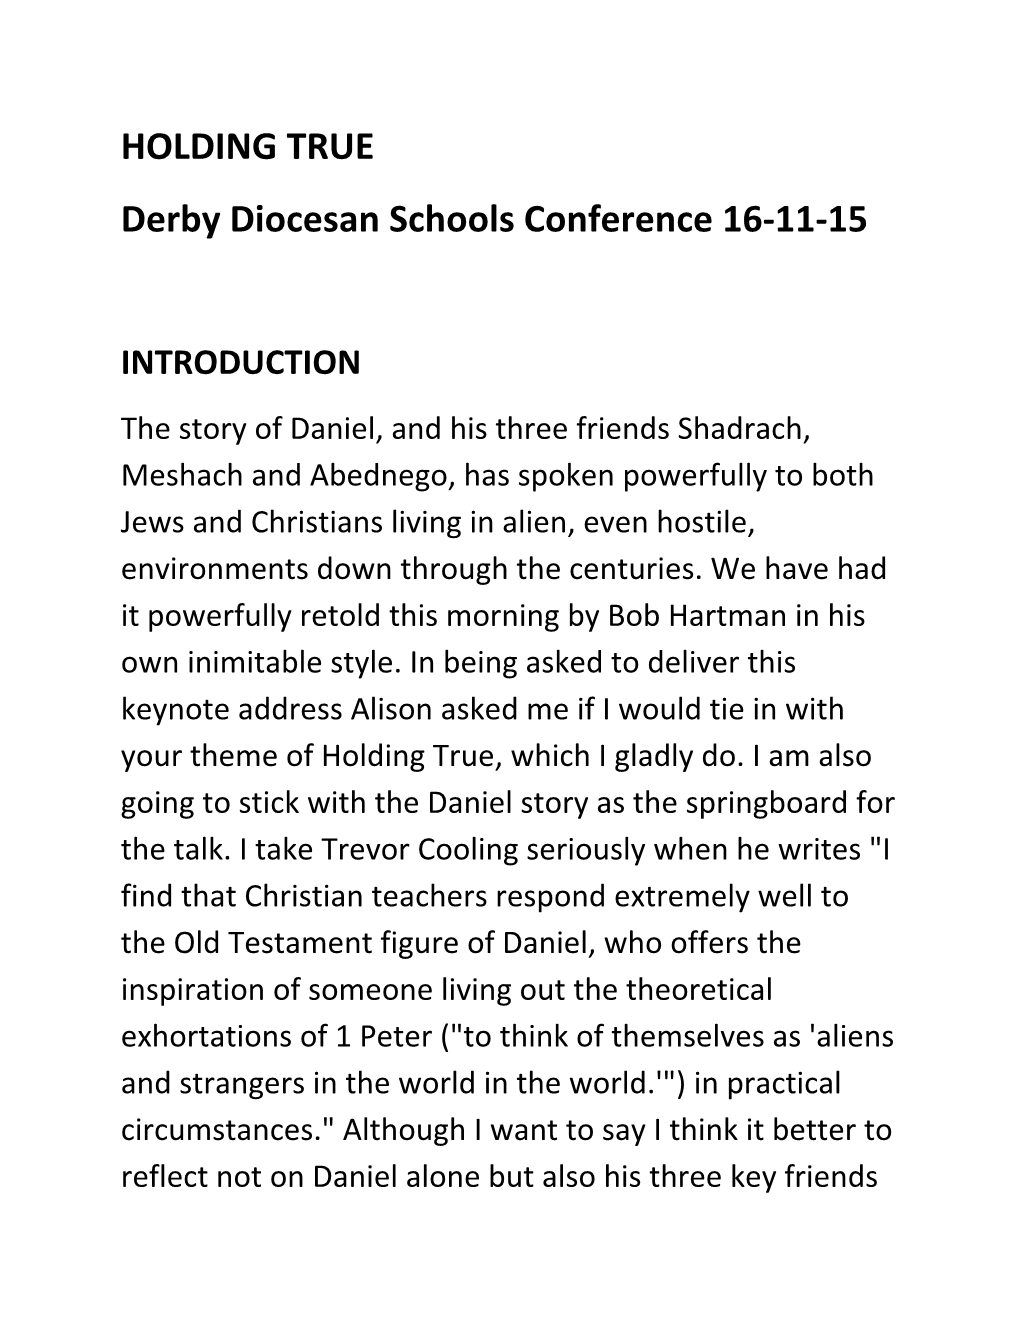 Derby Diocesan Schools Conference 16-11-15